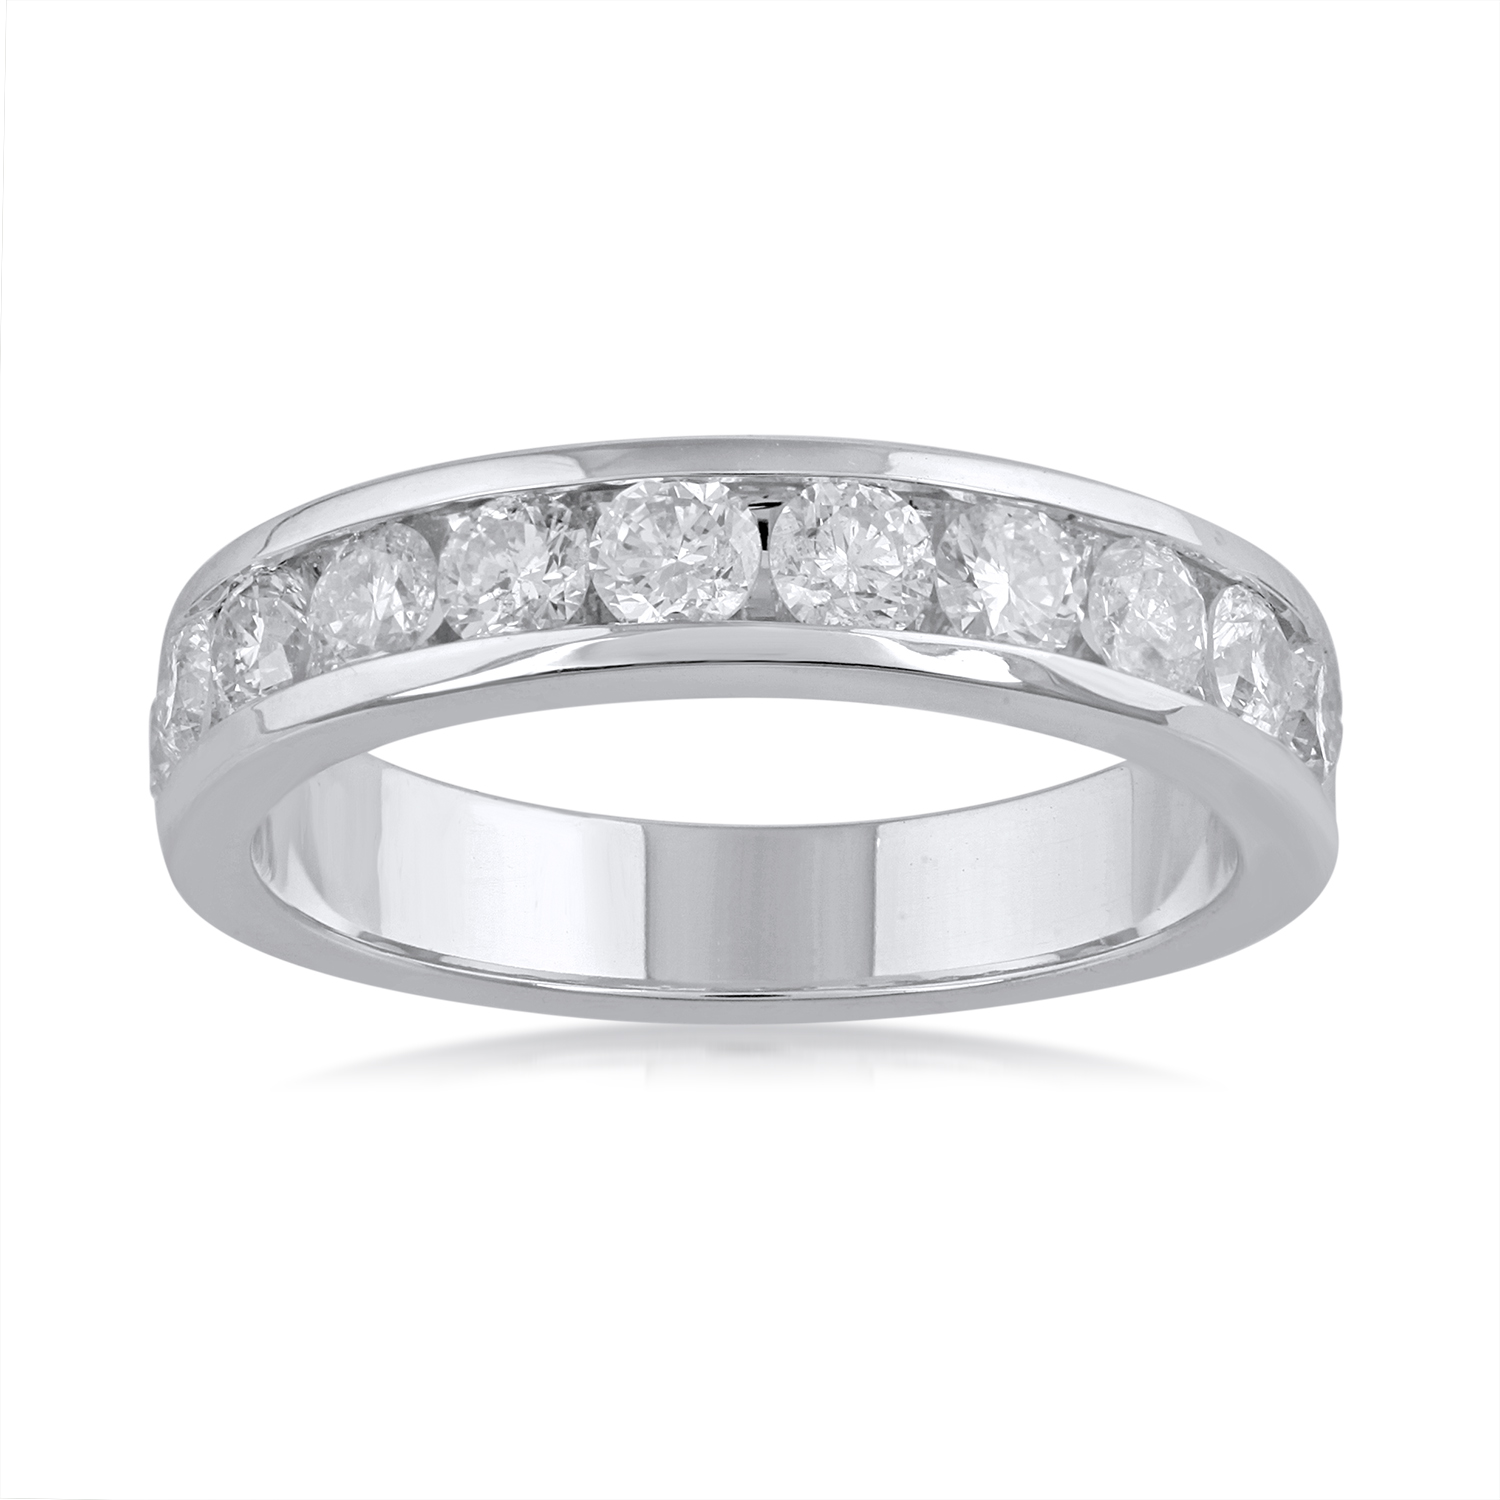 1 Carat Diamond Wedding Band Ring in 14k White Gold